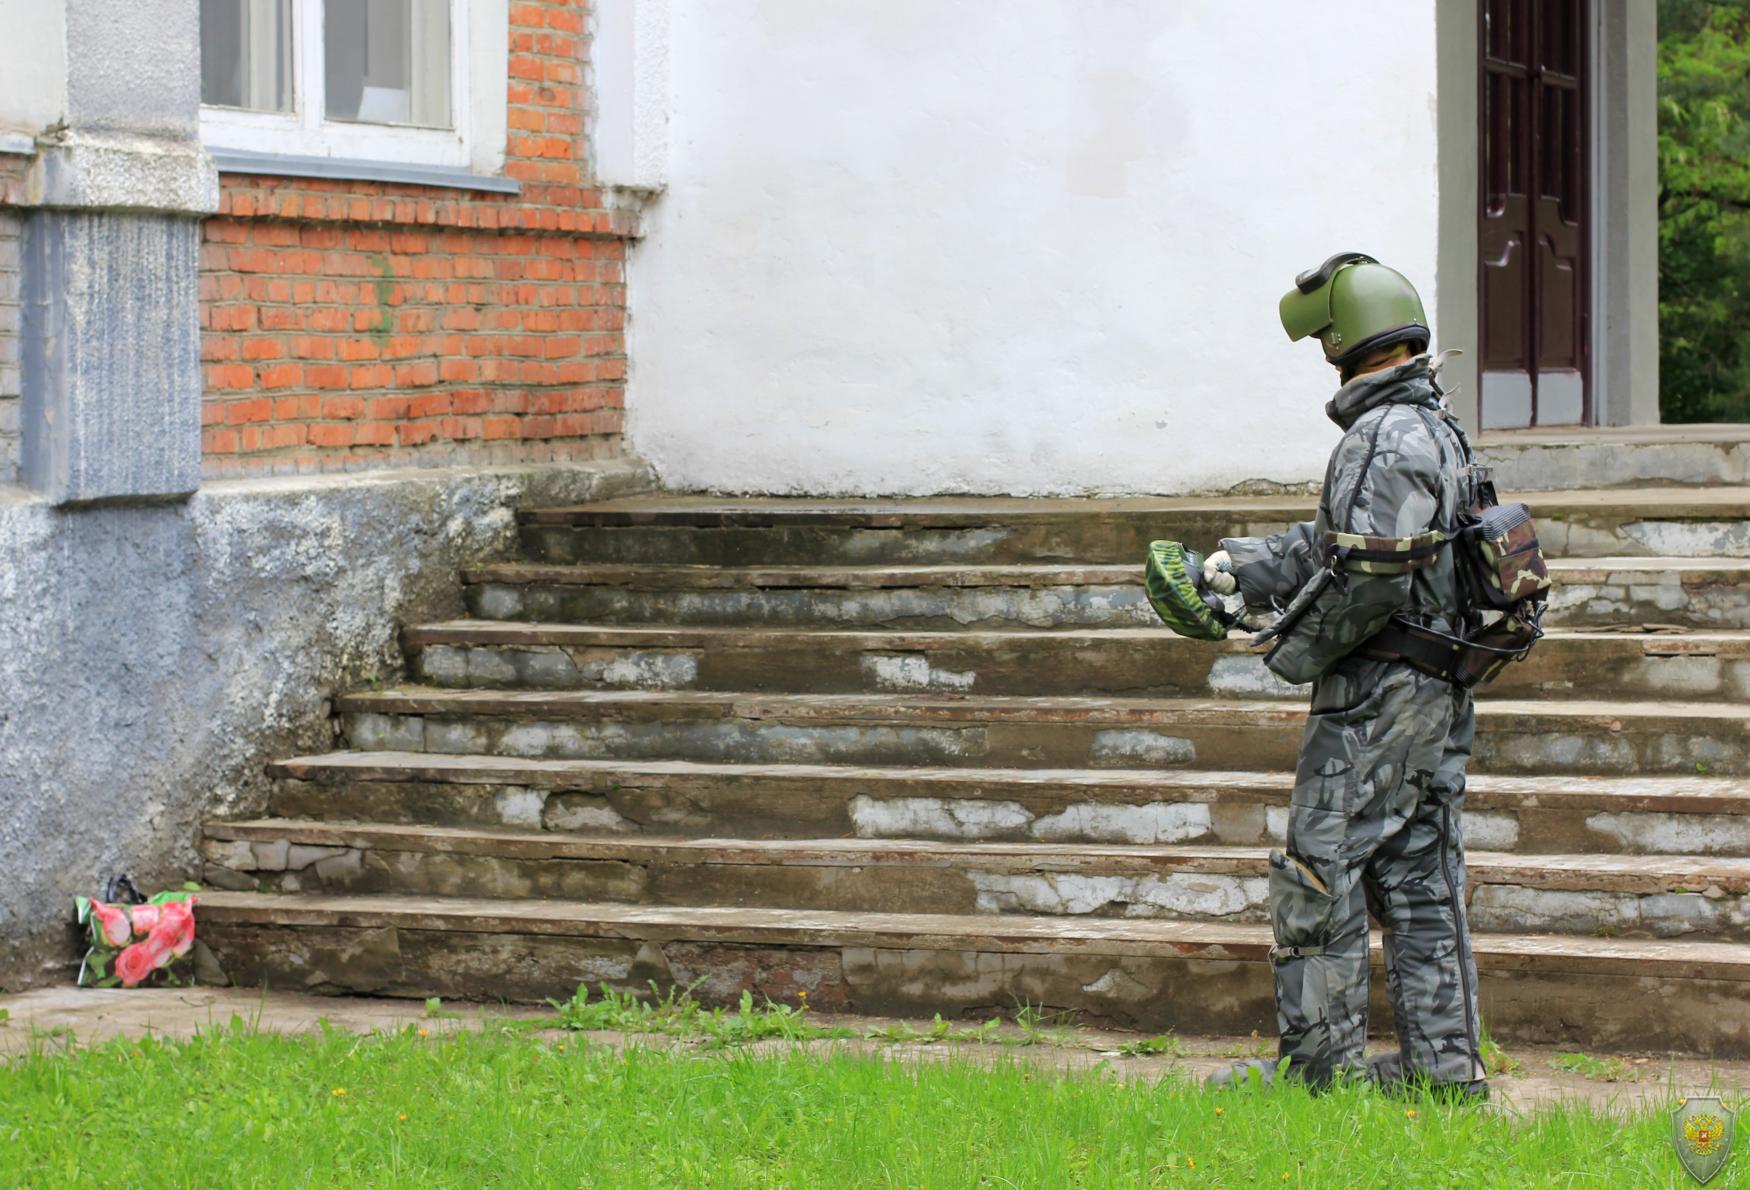 Оперативным штабом в Тамбовской области проведено тактико-специальное учение по пресечению террористического акта на объекте промышленности